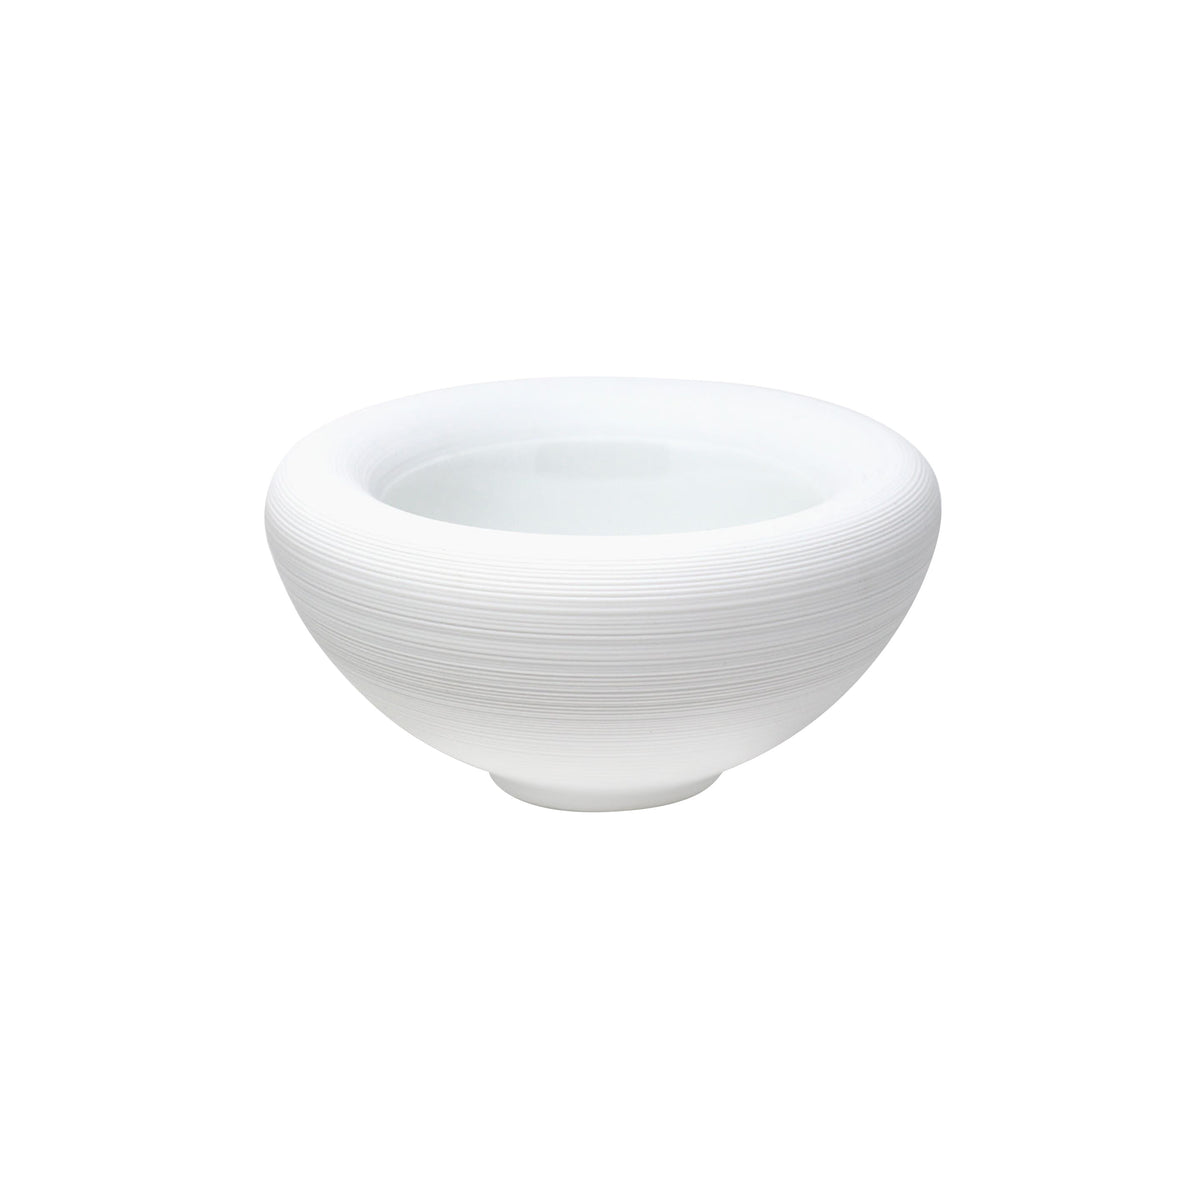 HEMISPHERE White Satin - Bubble bowl